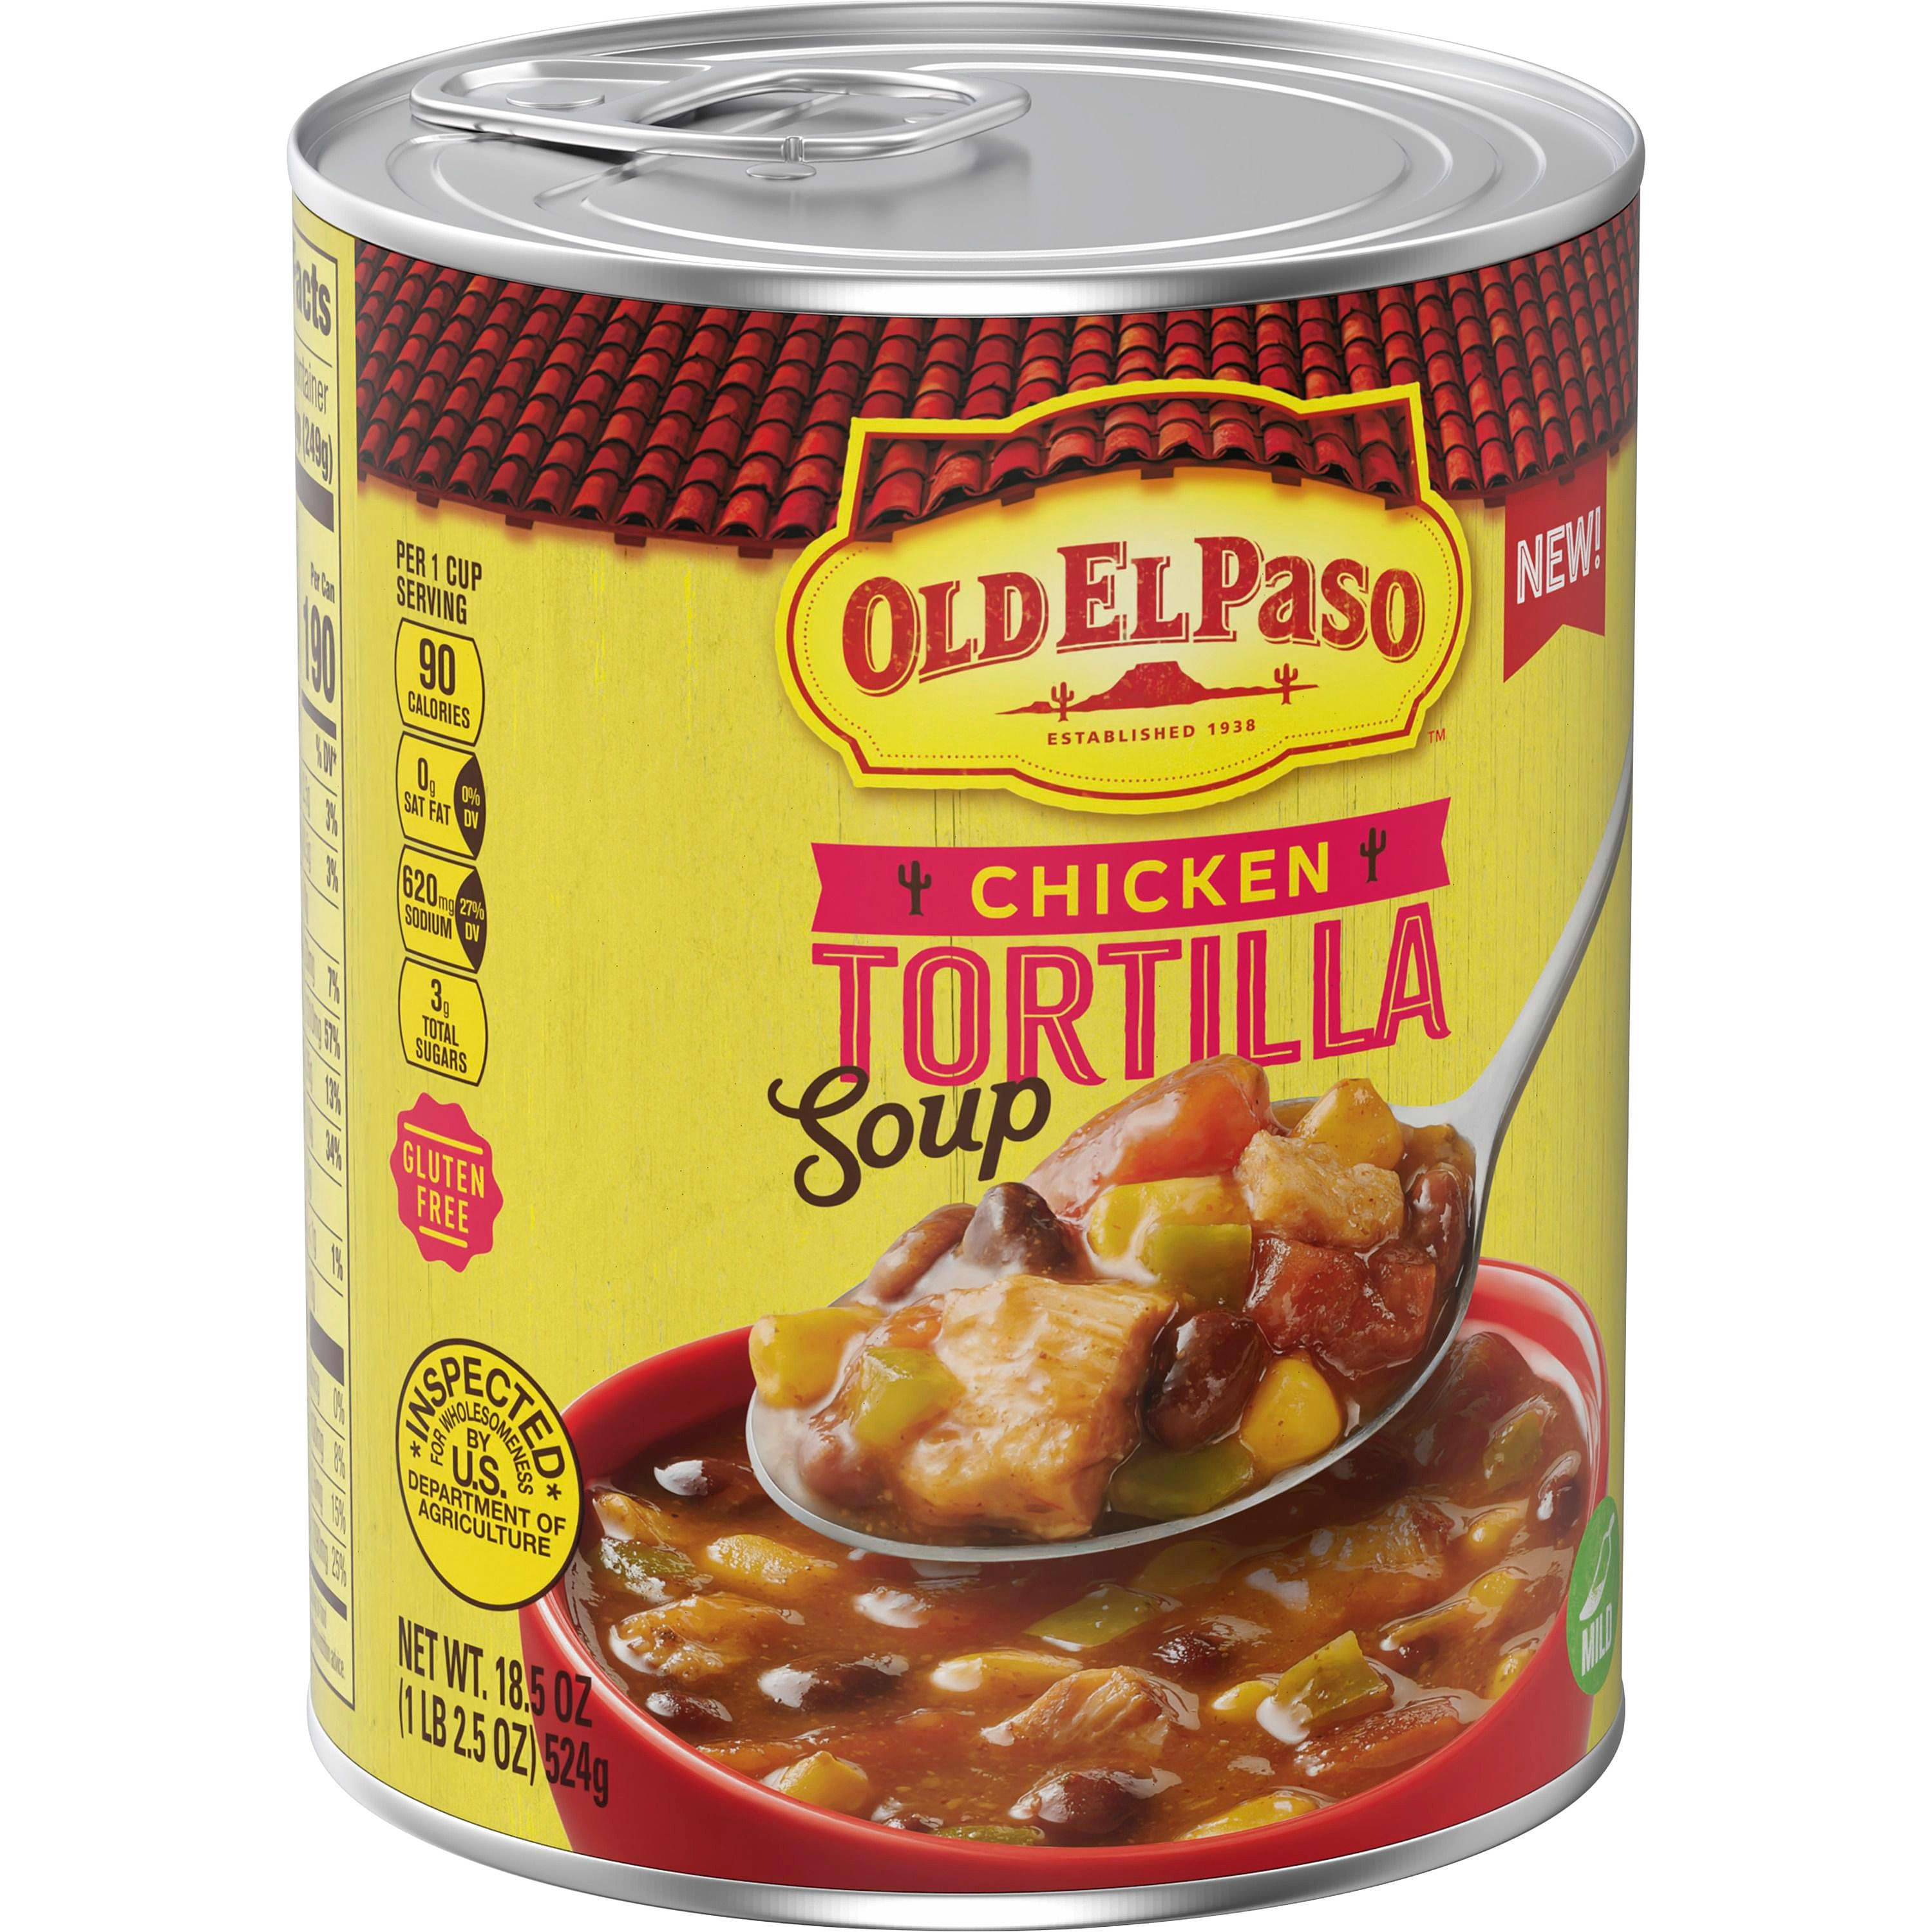 Old El Paso Chicken Tortilla Soup - Old El Paso